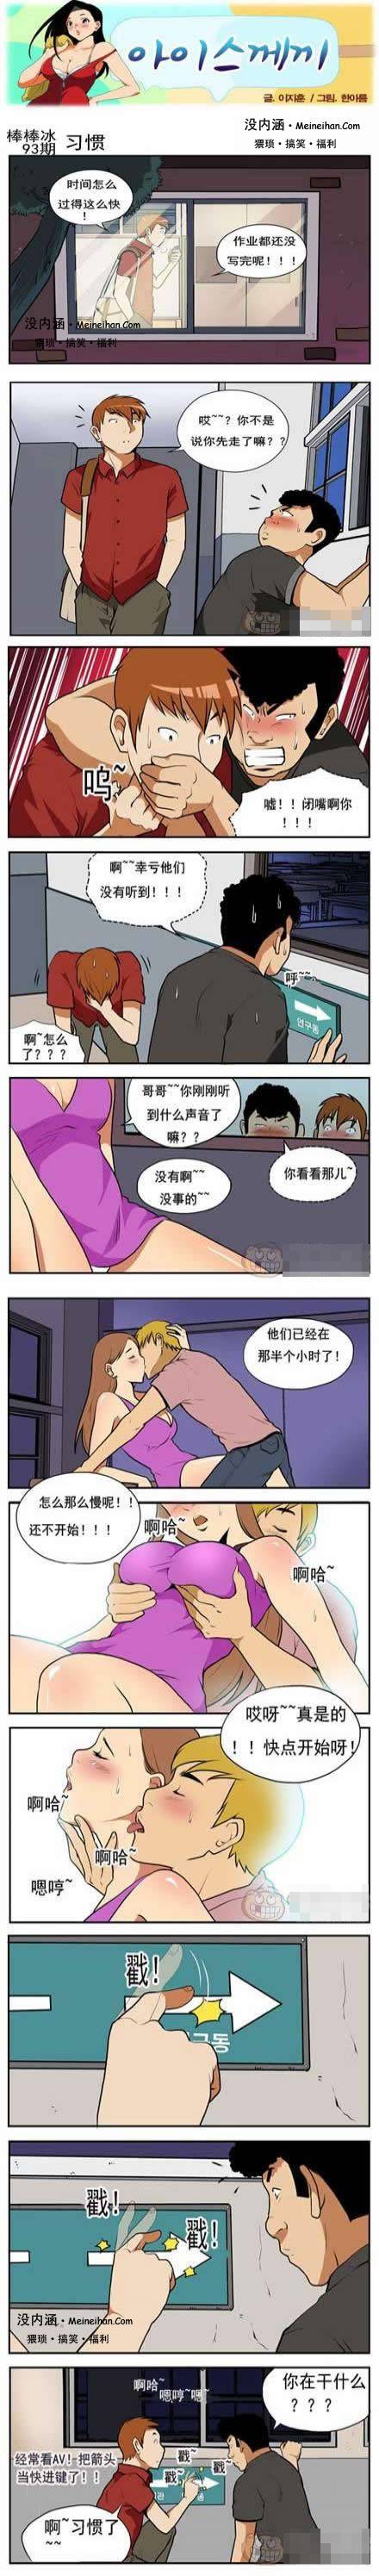 邪恶漫画爆笑囧图第170刊：夫人的内裤